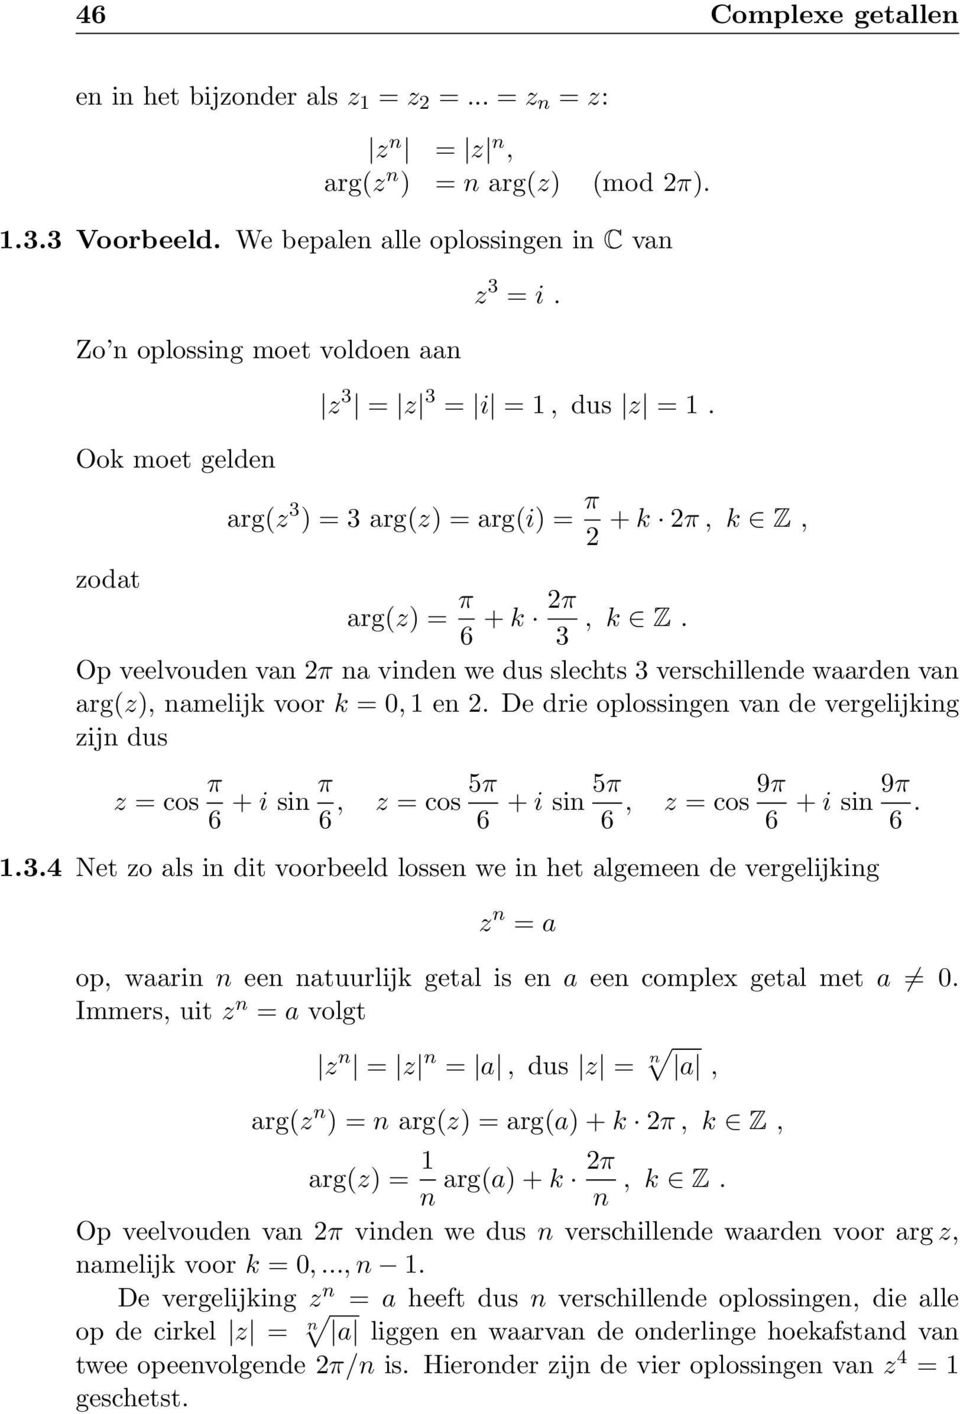 Op veelvouden van 2π na vinden we dus slechts 3 verschillende waarden van arg(z), namelijk voor k = 0, 1 en 2.